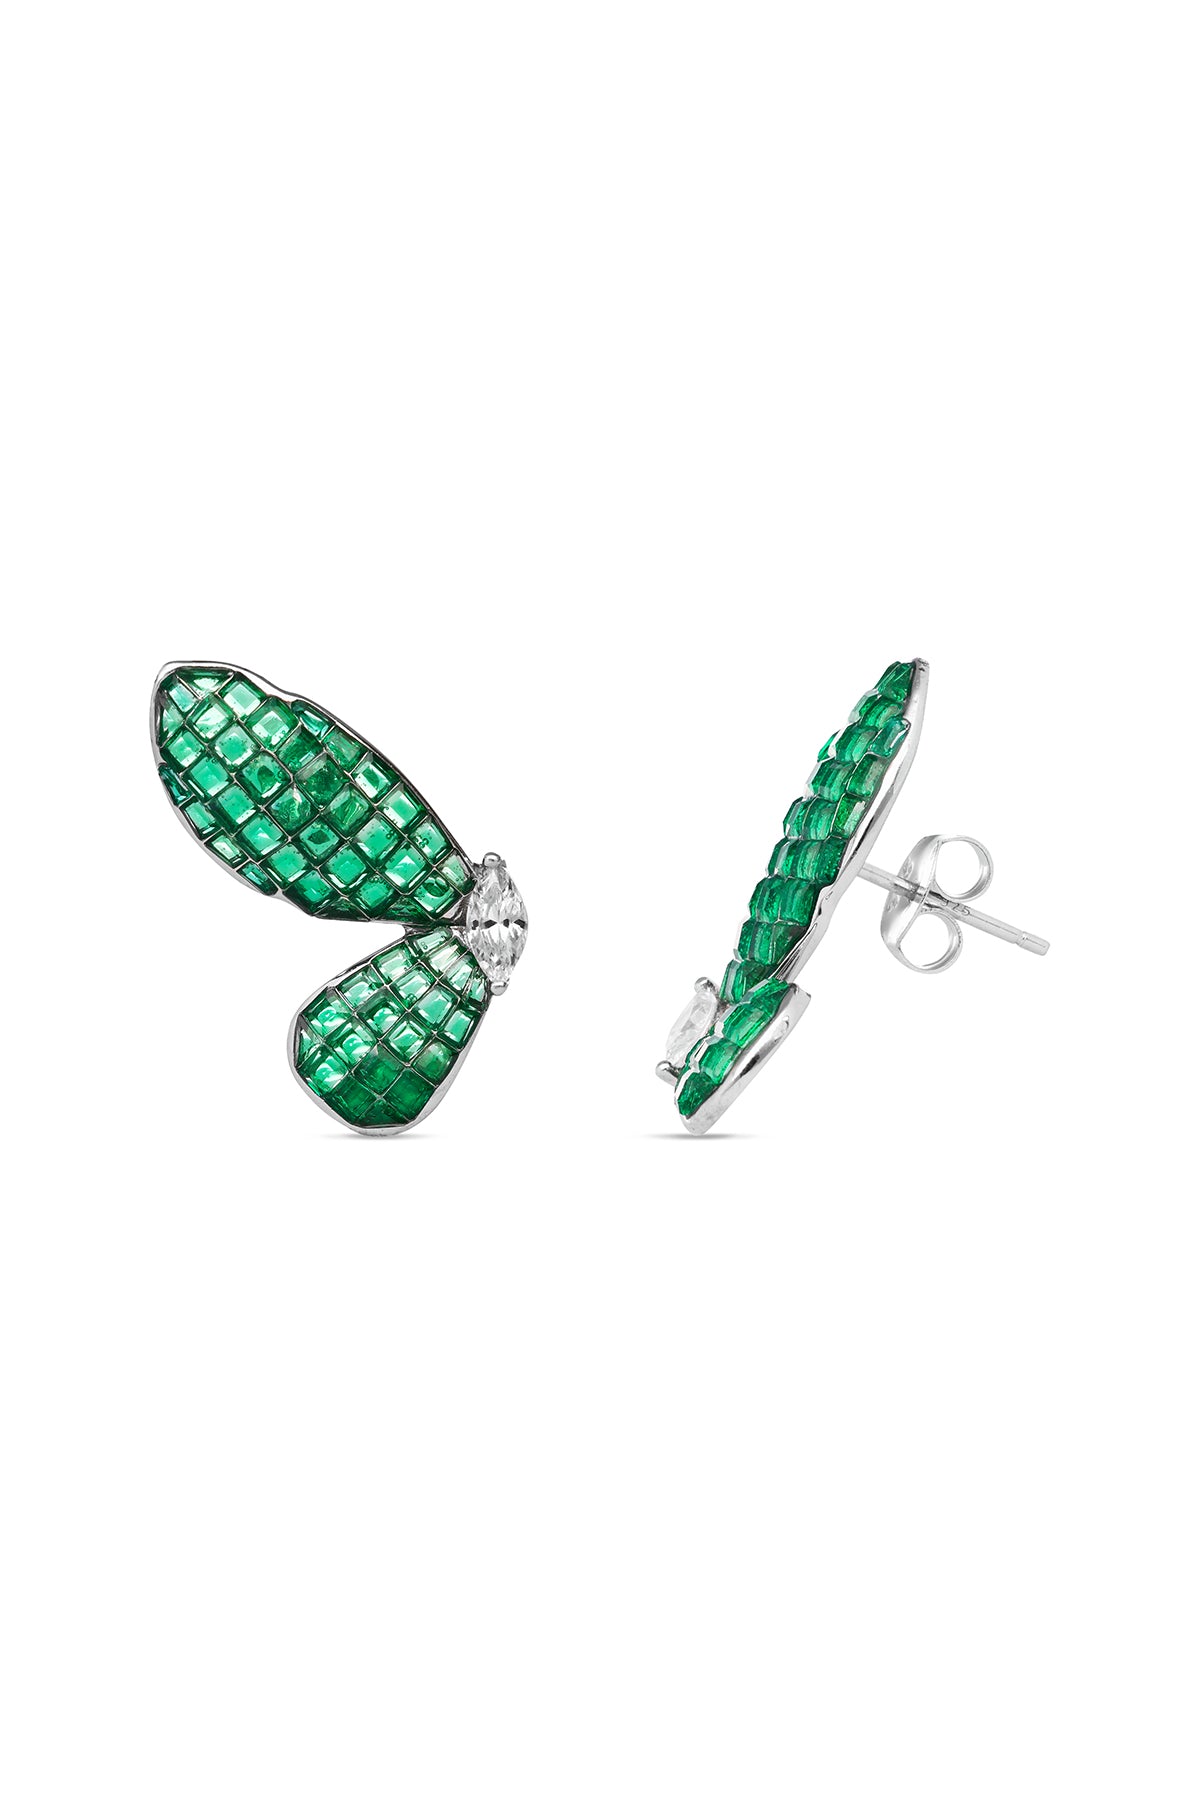 Butterfly Emerald Green Ballet Earrings